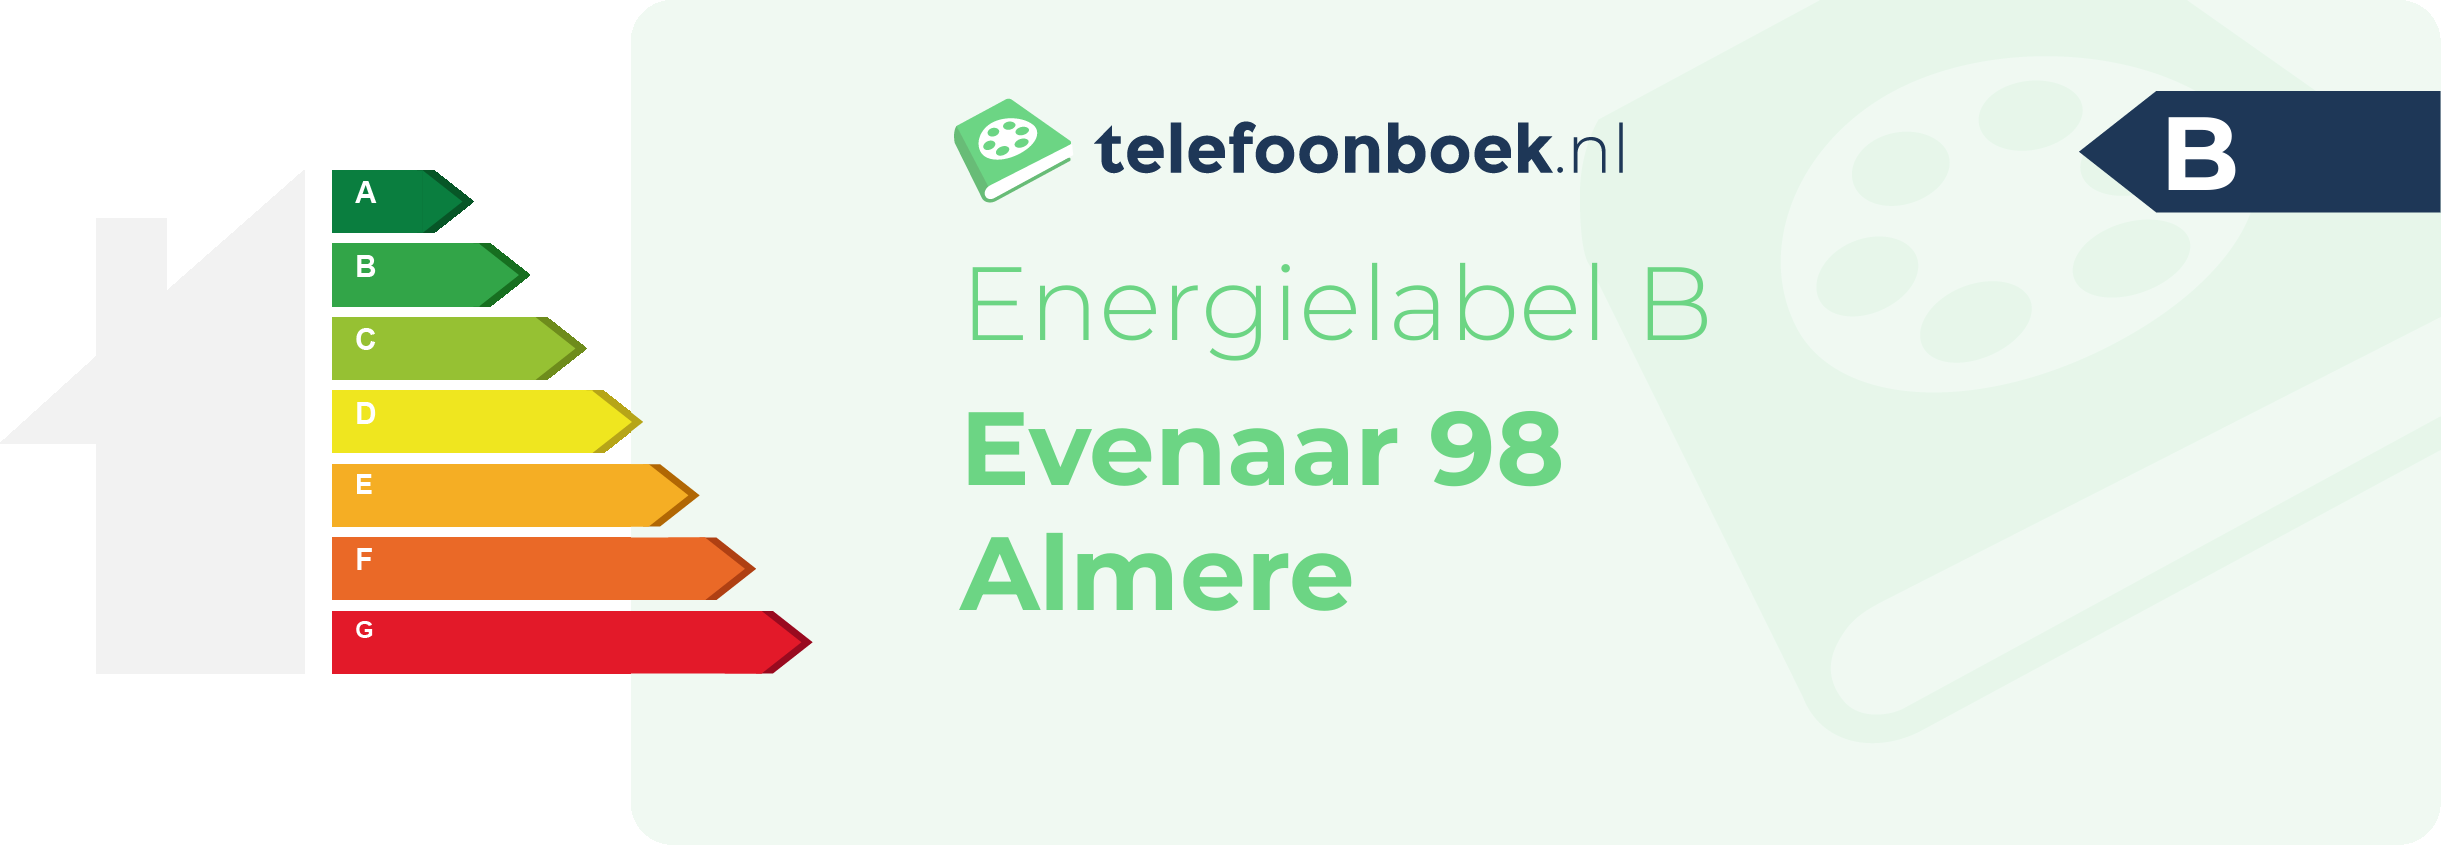 Energielabel Evenaar 98 Almere